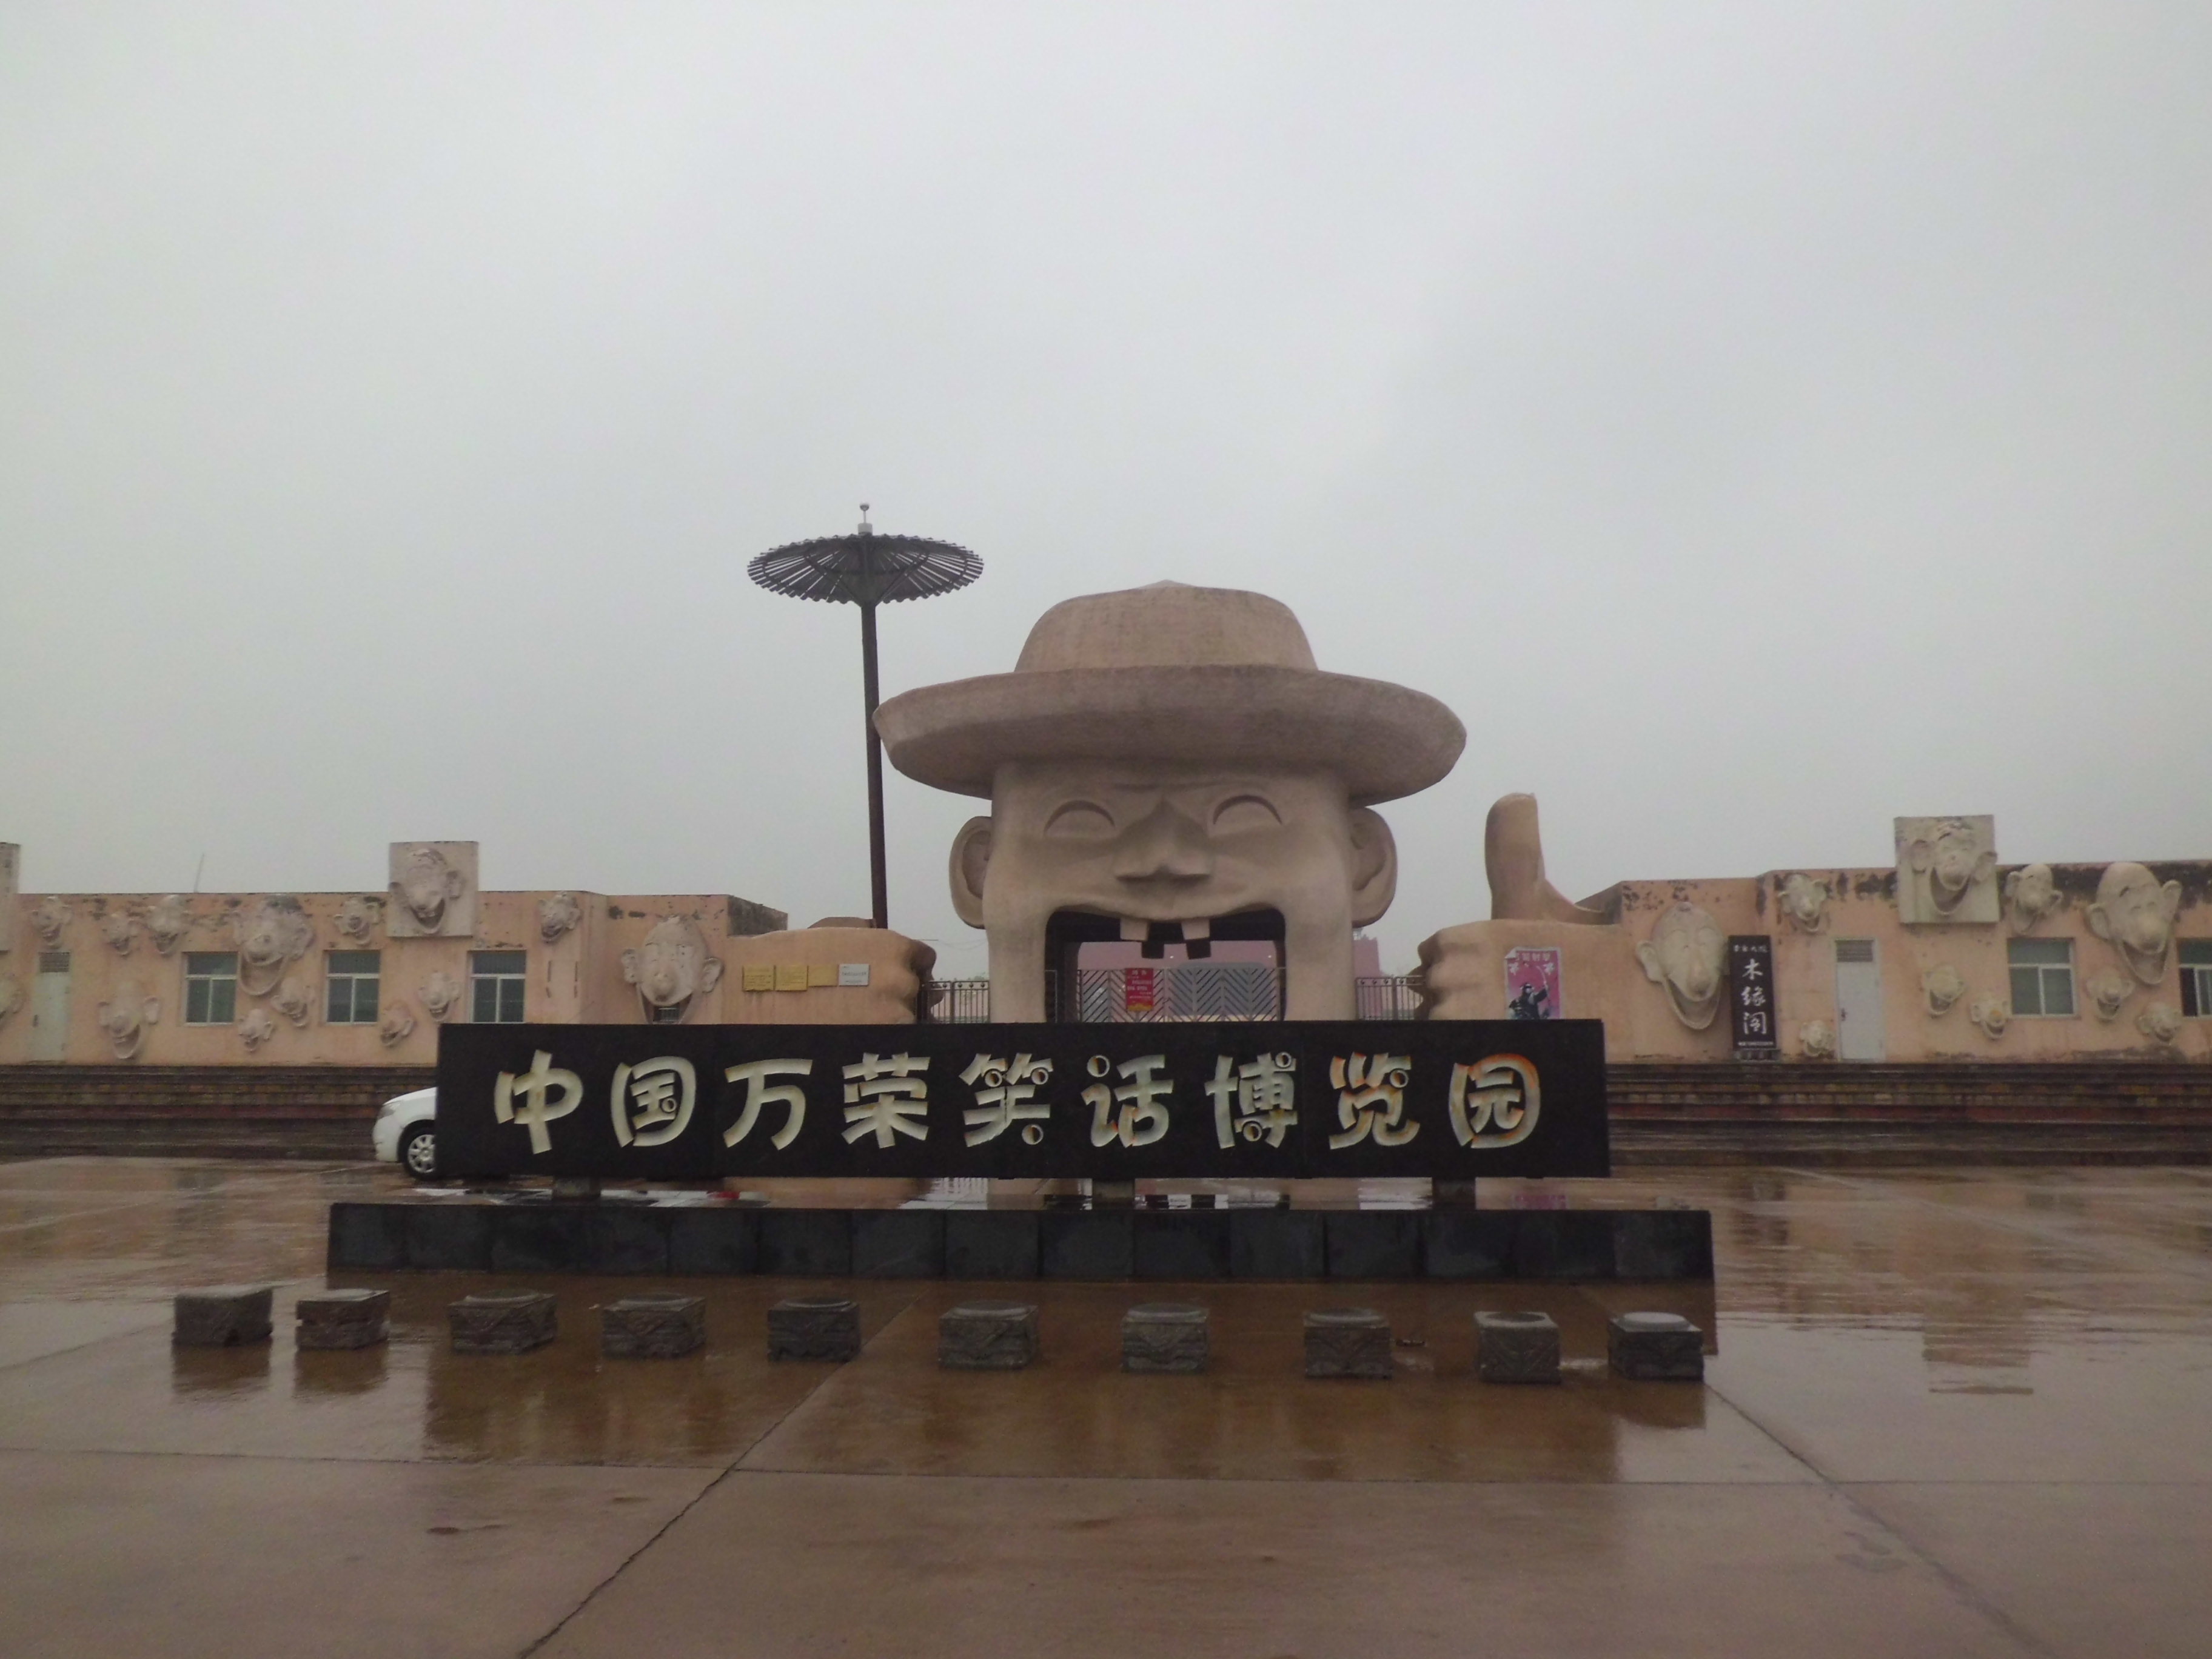 万荣笑话博览园 - 中国山西运城景点